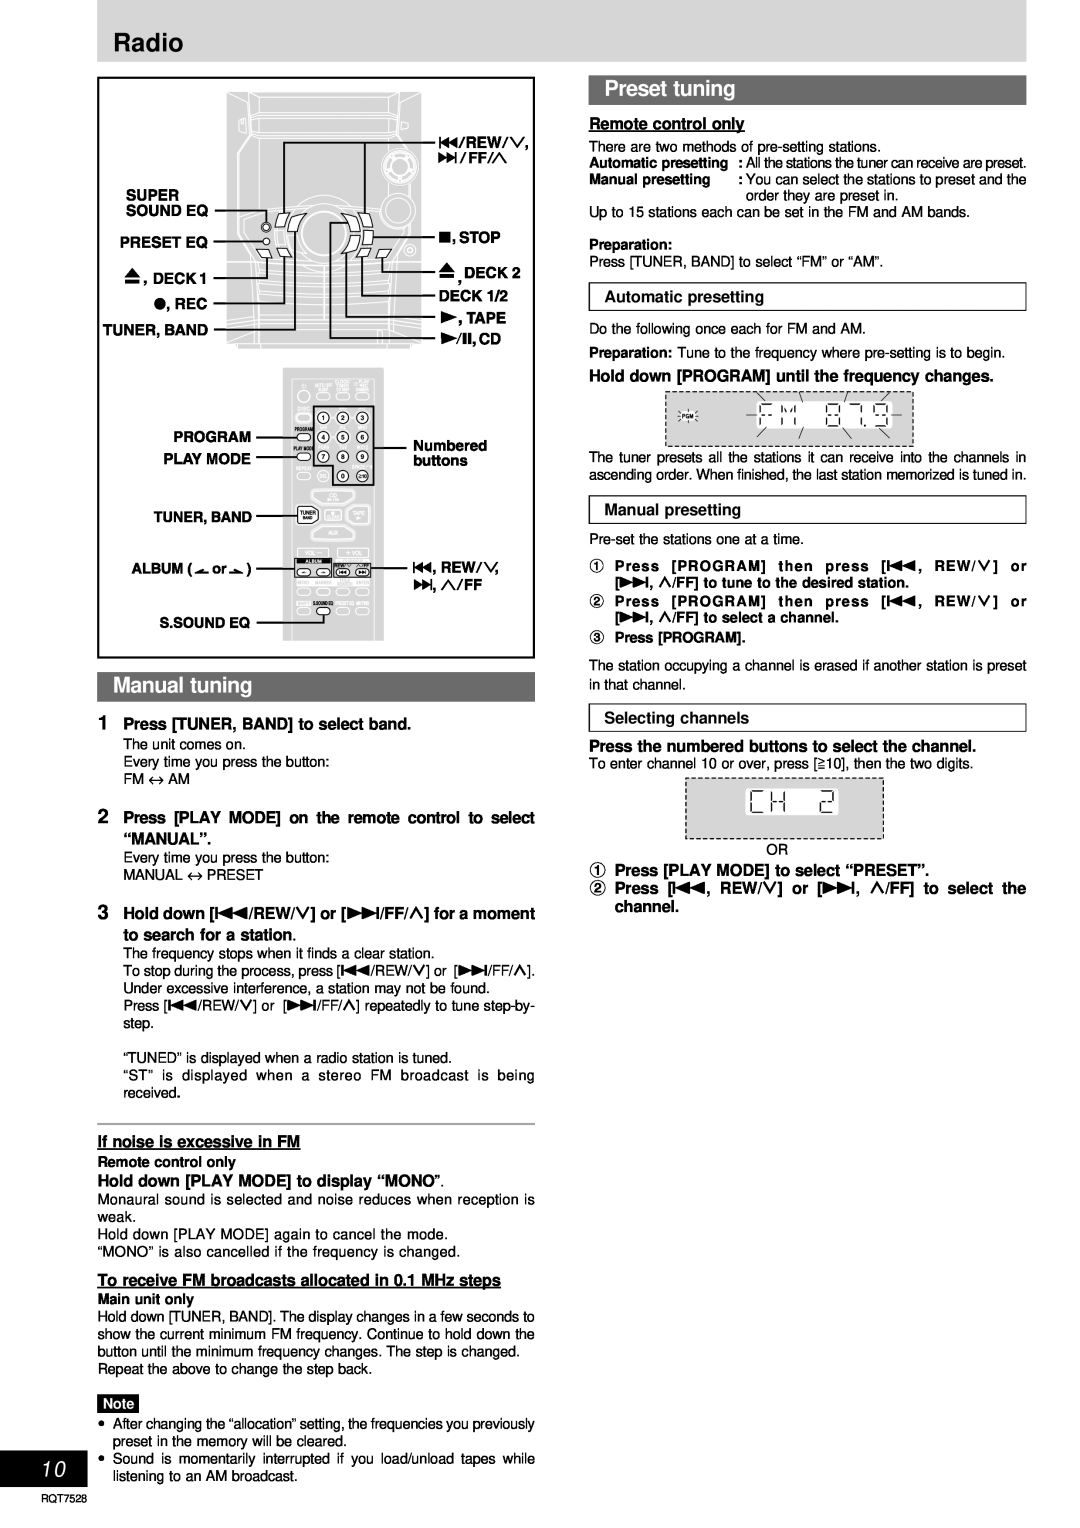 Panasonic SC-AK220 operating instructions Radio, Manual tuning, Preset tuning 